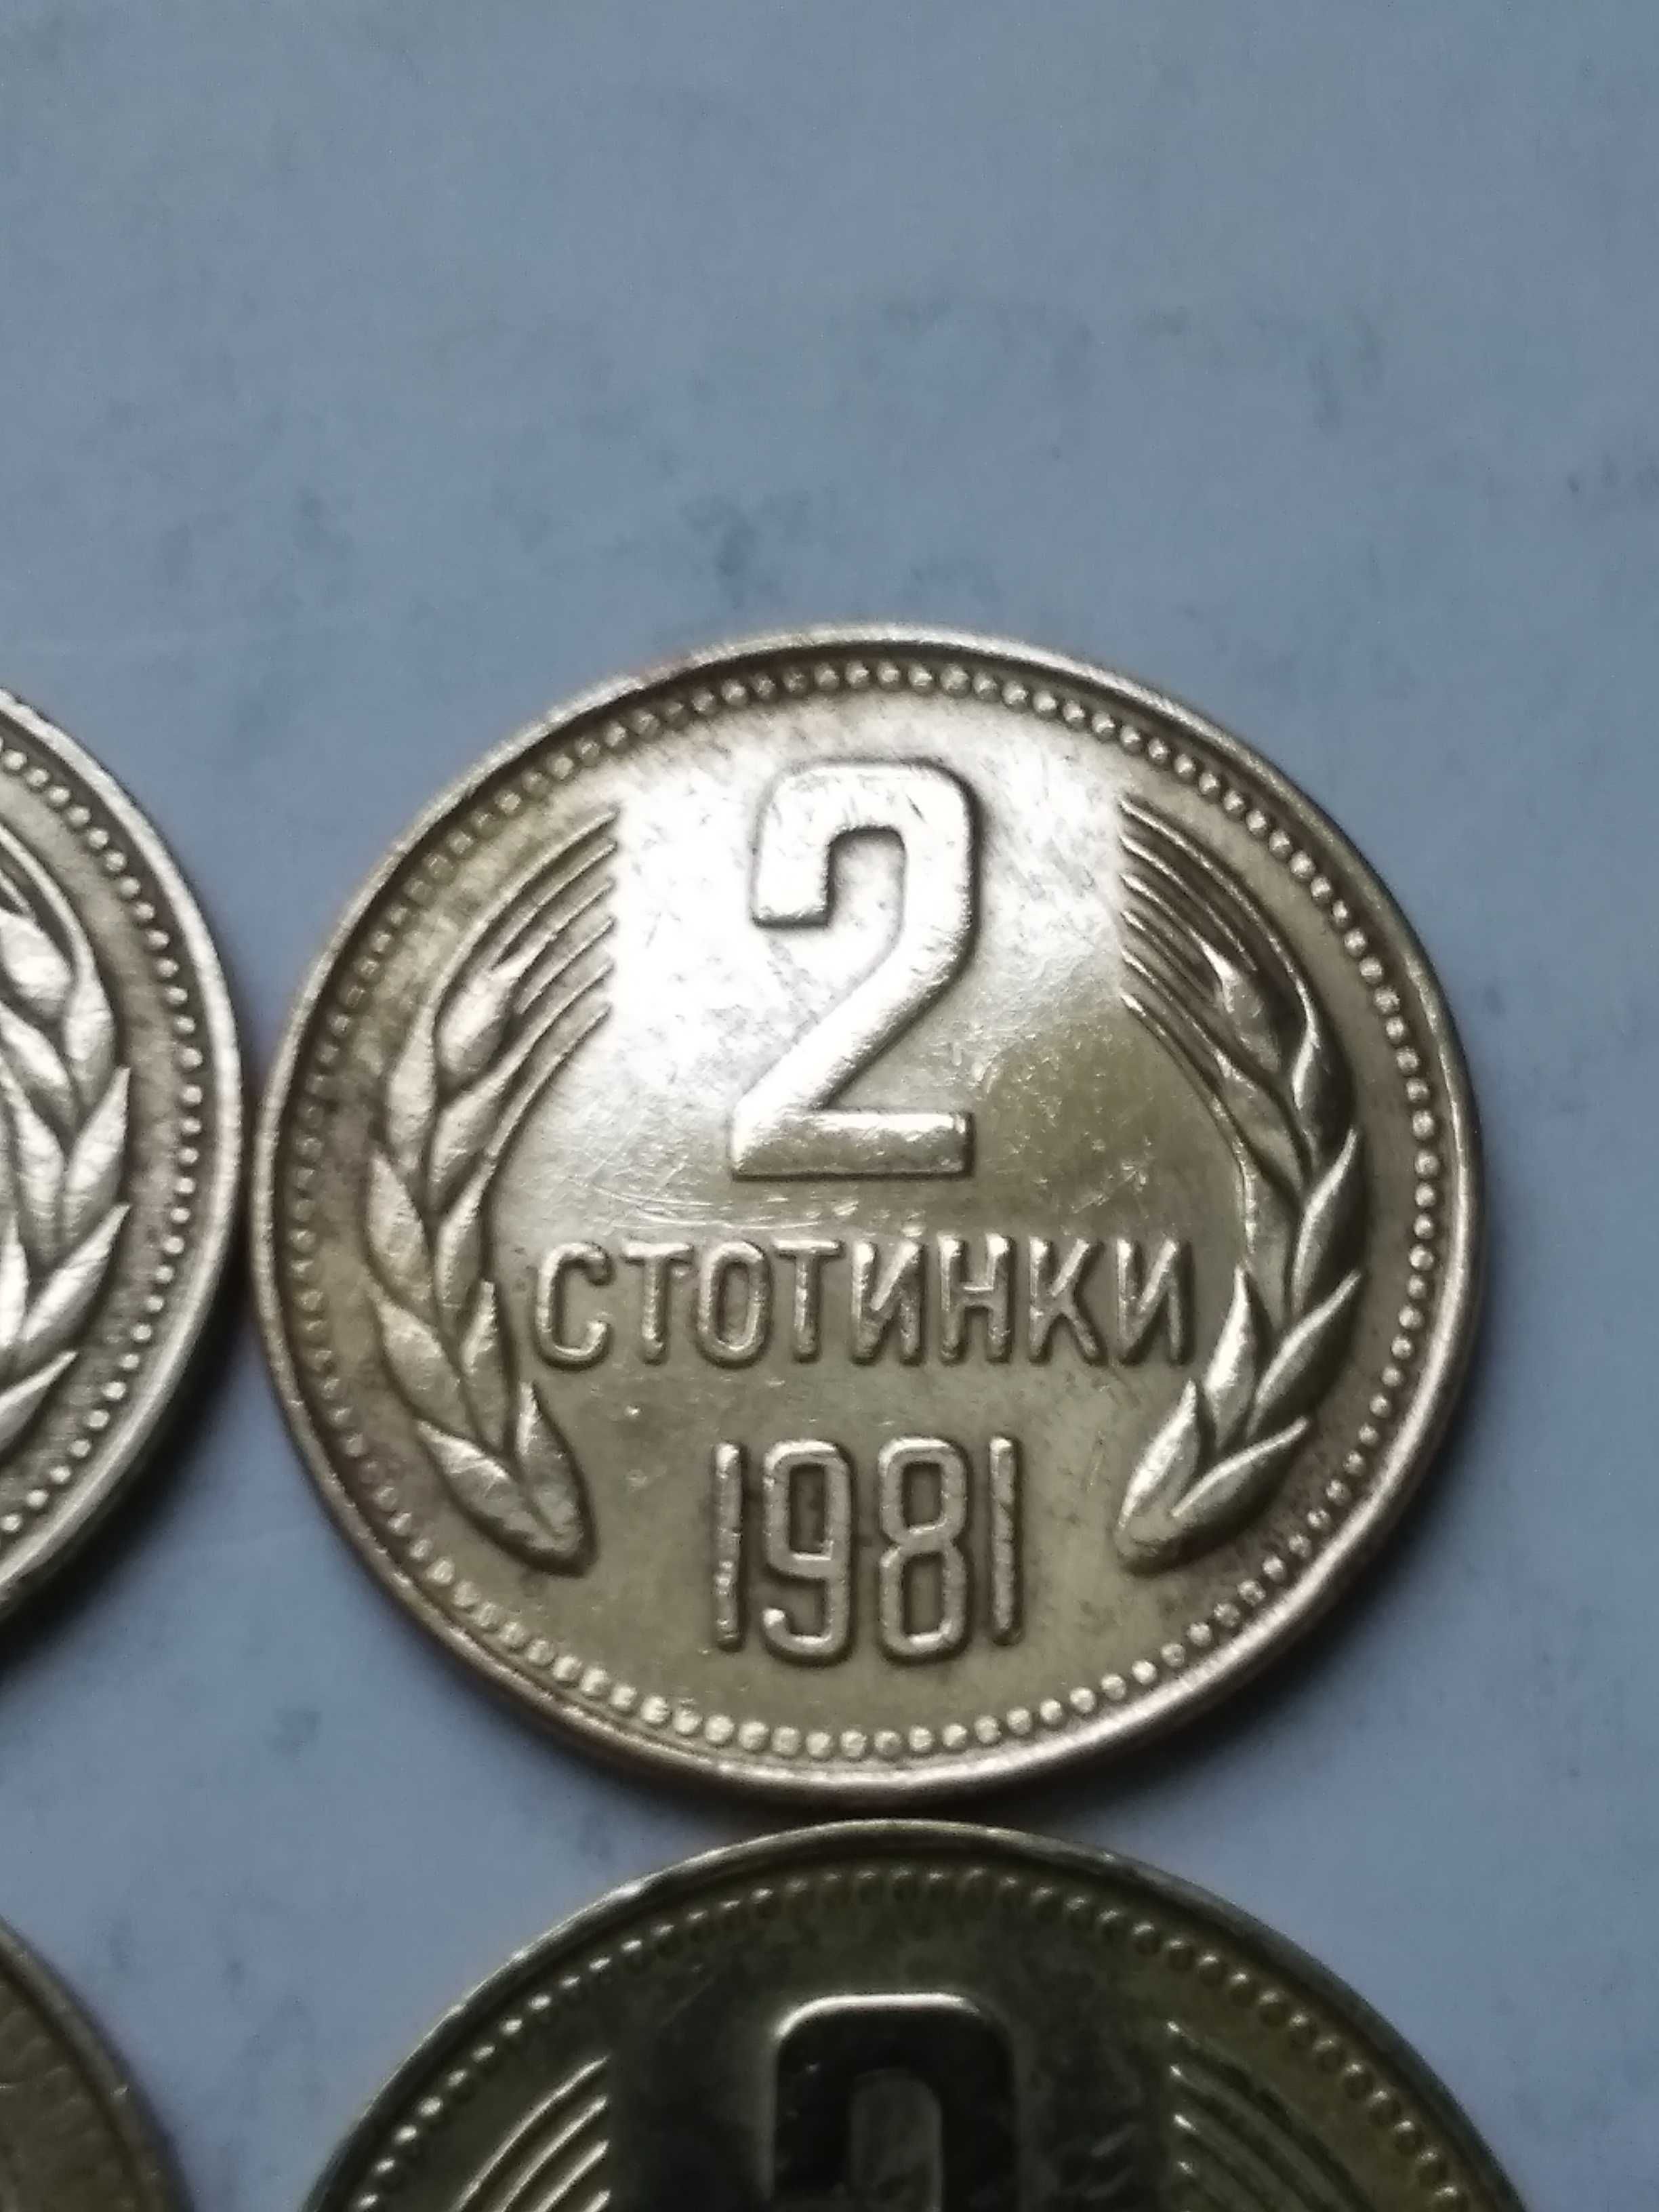 Български монети от 1951г. до 1990г.